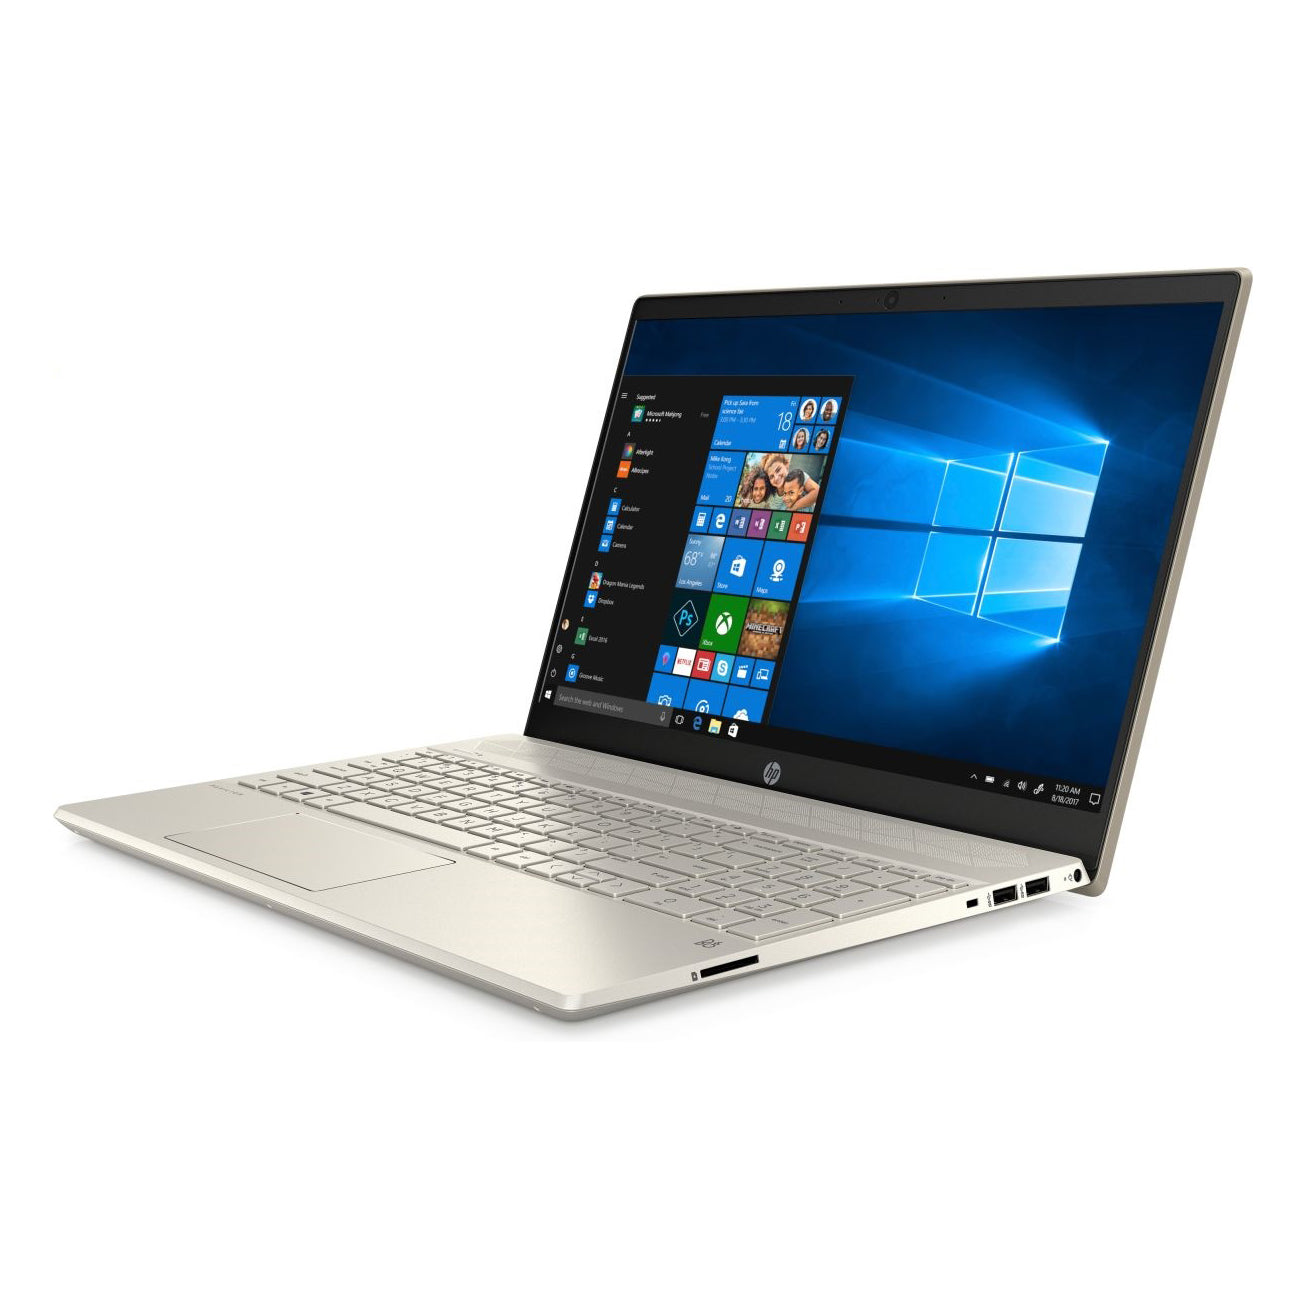 Laptop HP Pavilion 15-cs3008TU 8QP02PA- Vàng ( CPU i3-1005G1, Ram 4GD4, 256GSSD, 15.6 inch FHD,W10SL